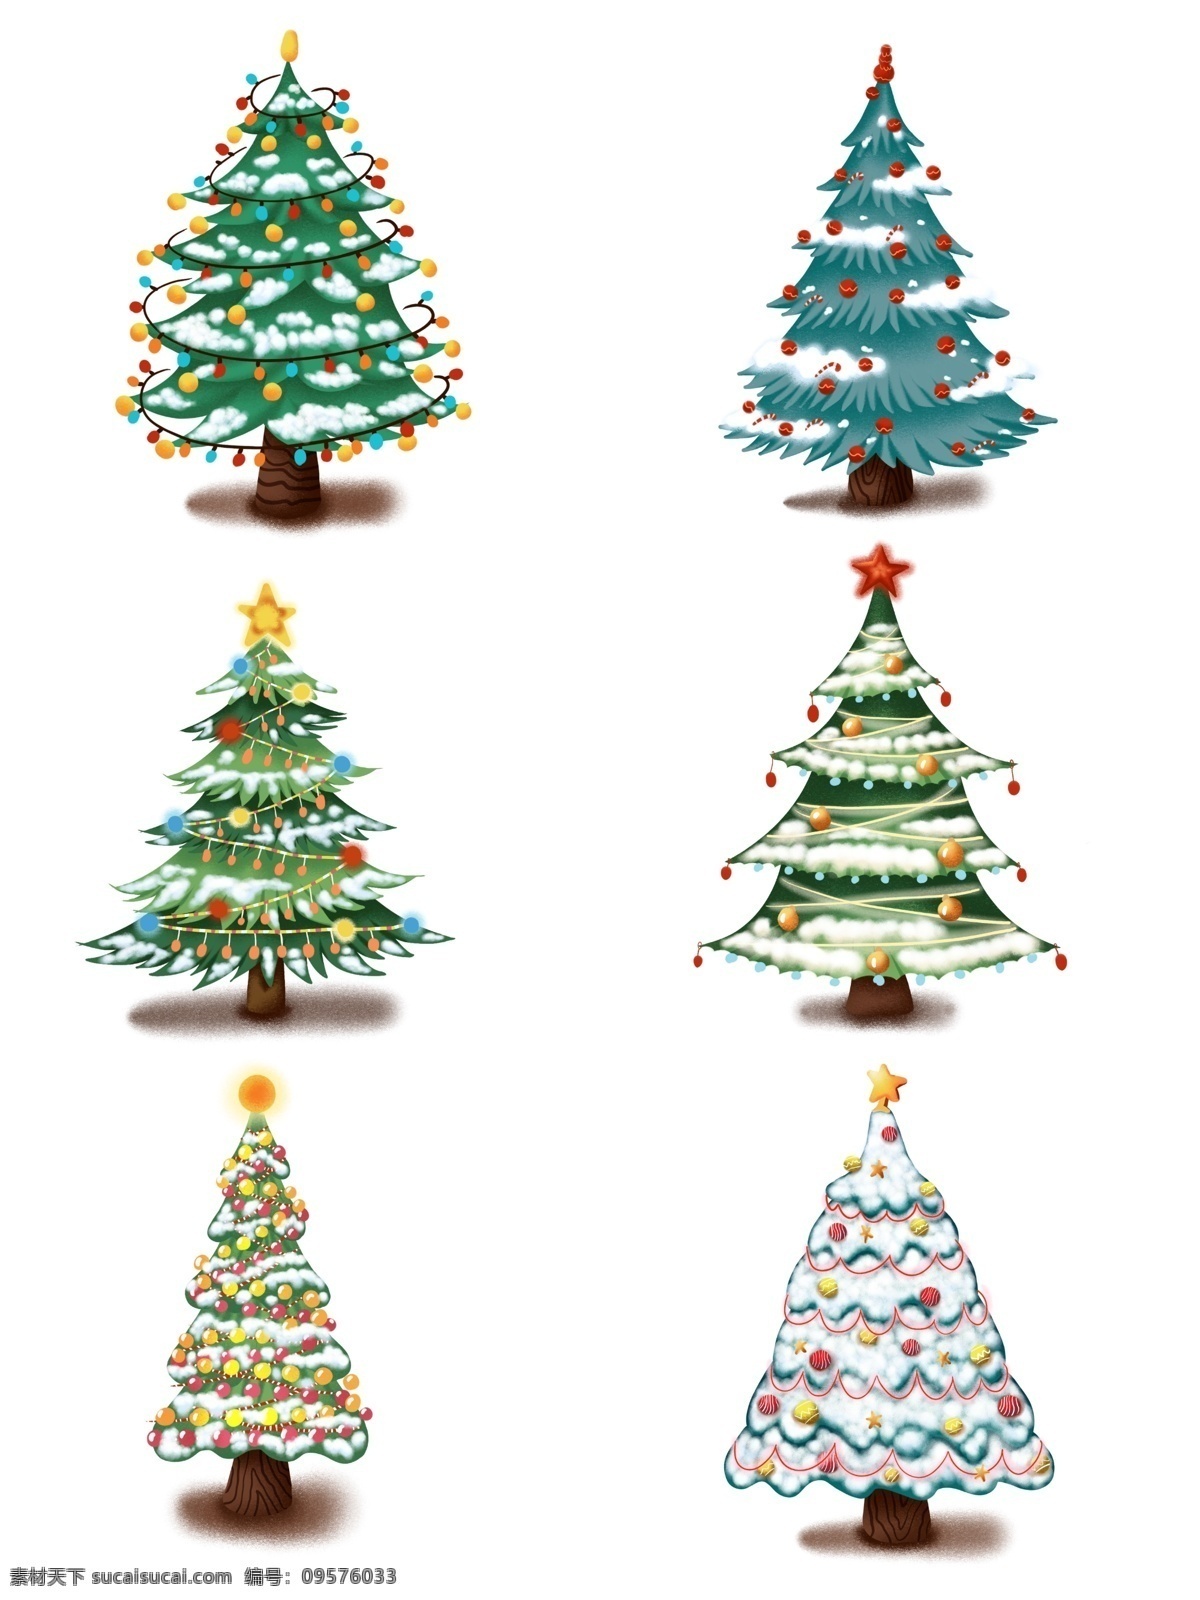 手绘 冬季 树木 圣诞树 插画 商用 分层 套 图 手绘冬季树木 卡通礼品树 原创 圣诞礼品 树 ps 设计素材 创意 元素 冬季礼品树木